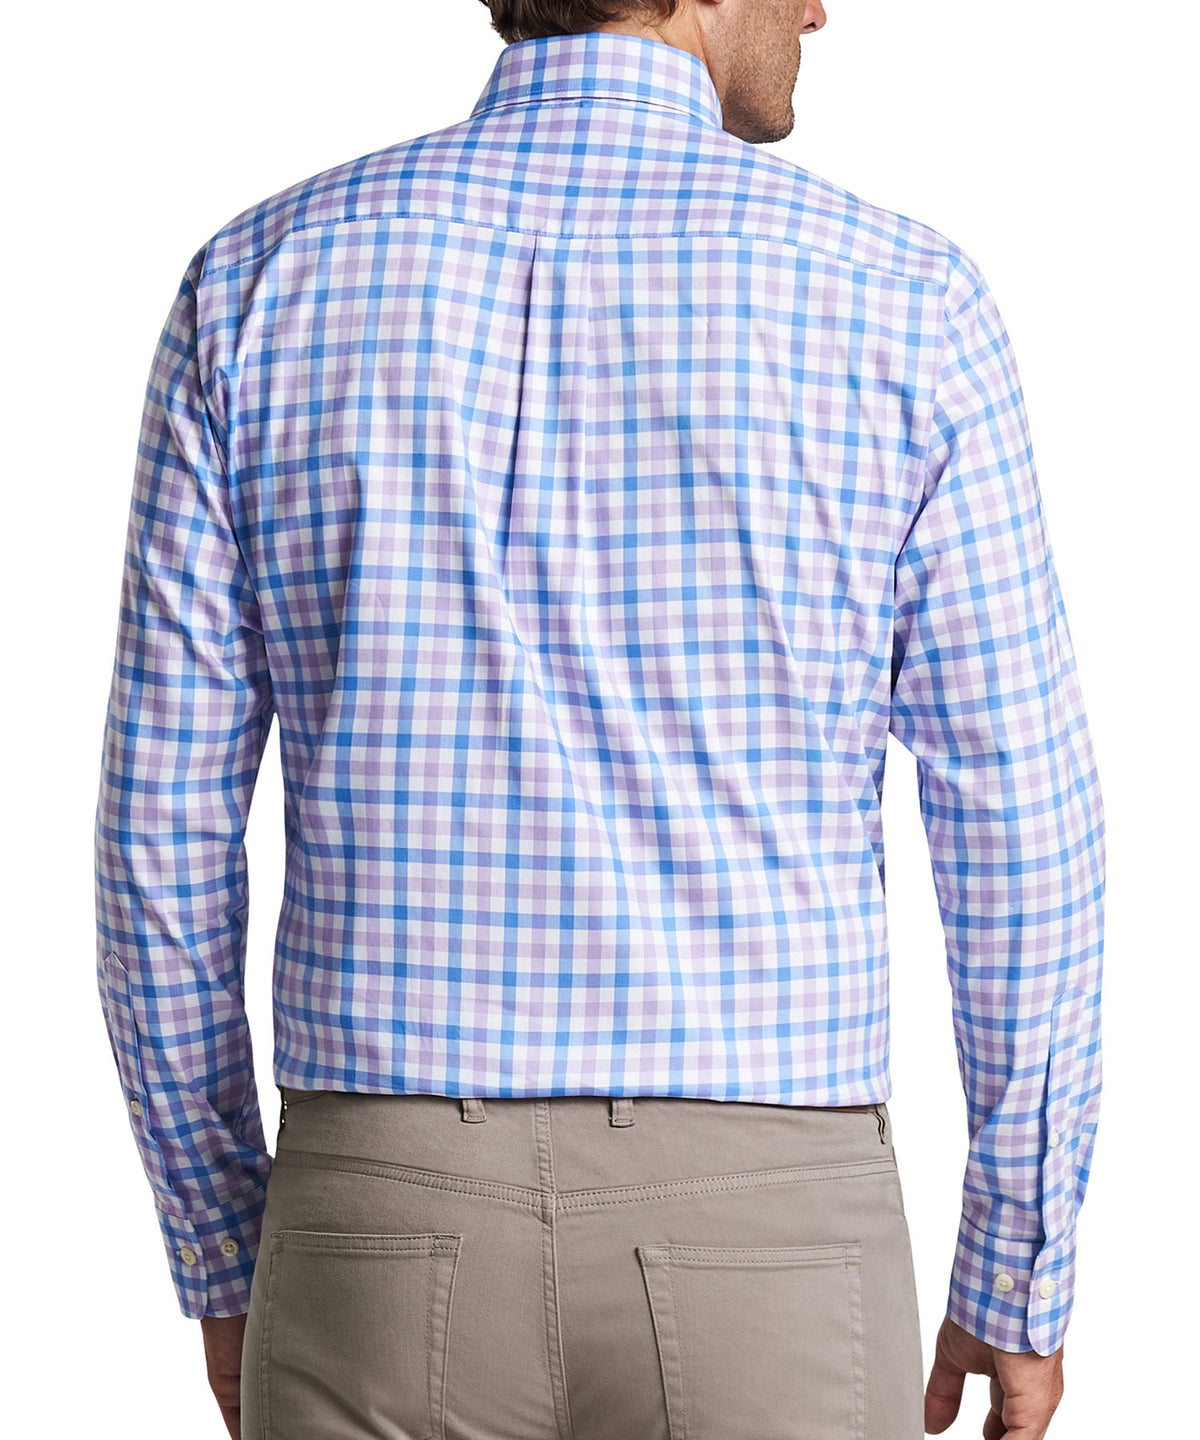 Peter Millar Long Sleeve Castine Button-Down Collar Patterned Sport Shirt, Big & Tall